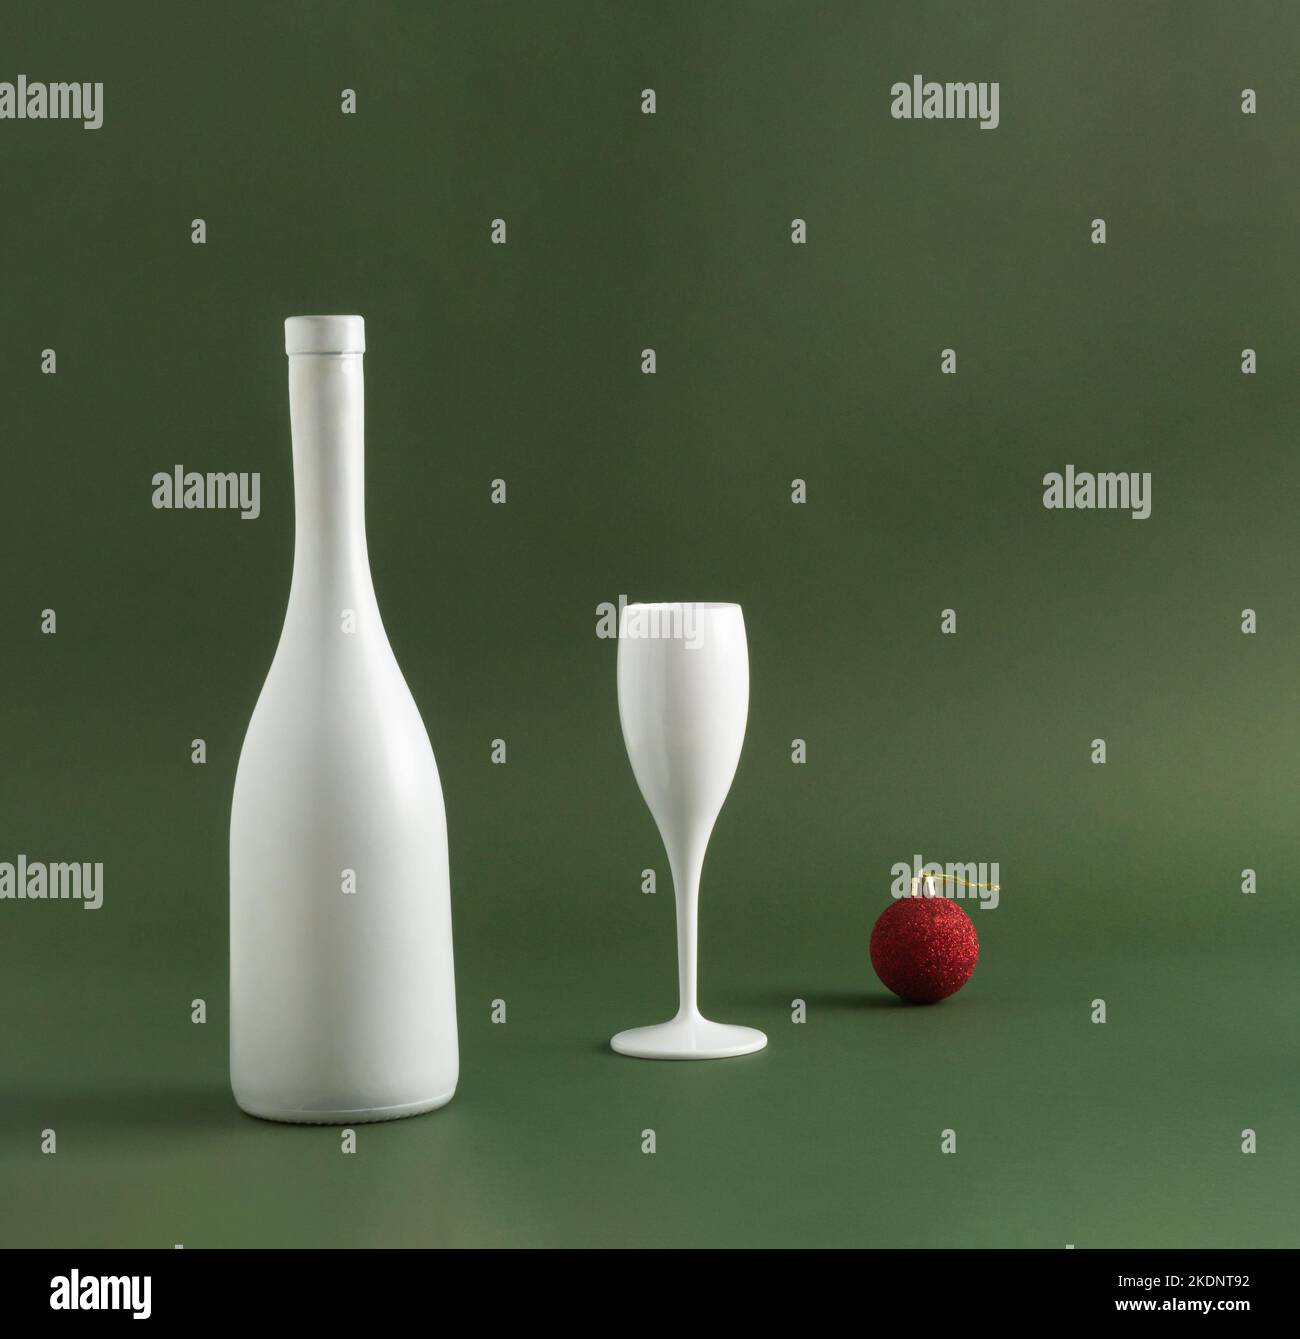 Bouteille de vin blanc, verre de vin et boule de Noël rouge sur fond vert foncé. Concept de fête minimal. Idée de célébration du nouvel an et de Noël. Copie s Banque D'Images